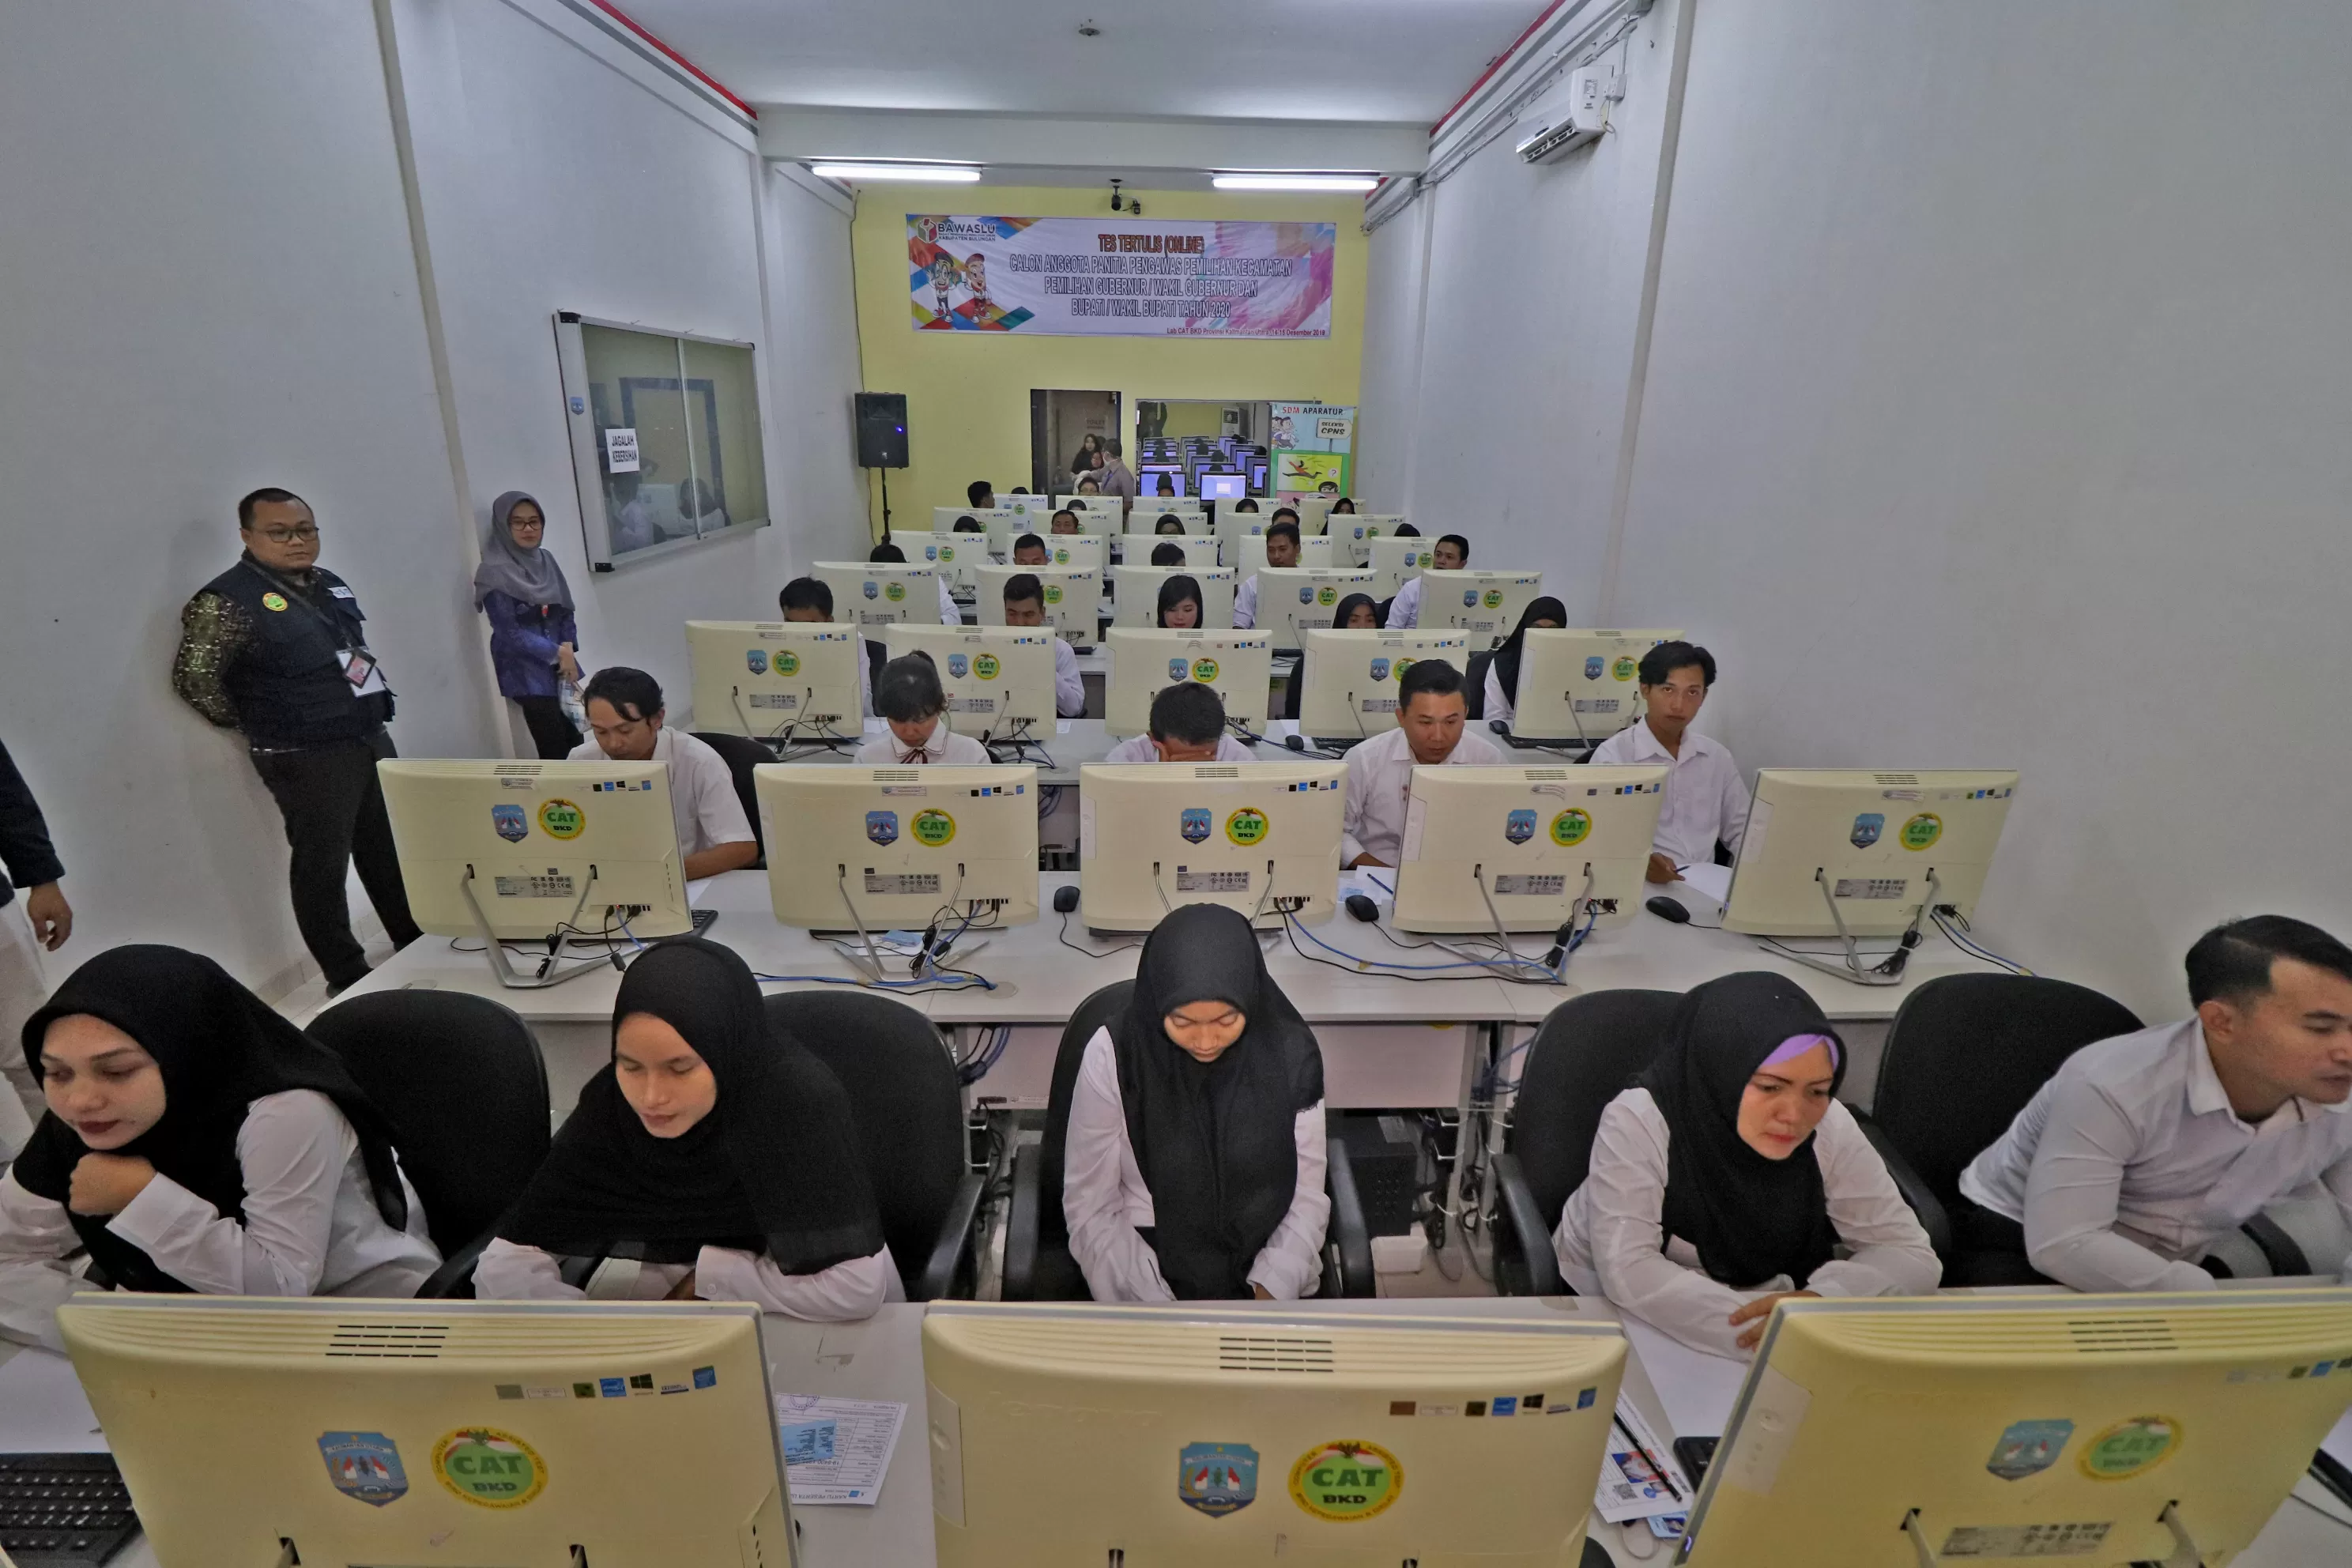 COBA KEBERUNTUNGAN: Peserta CPNS saat mengikuti tes SKD yang dilaksanakan di Laboratorium CAT di Jalan Durian, Tanjung Selor, belum lama ini.